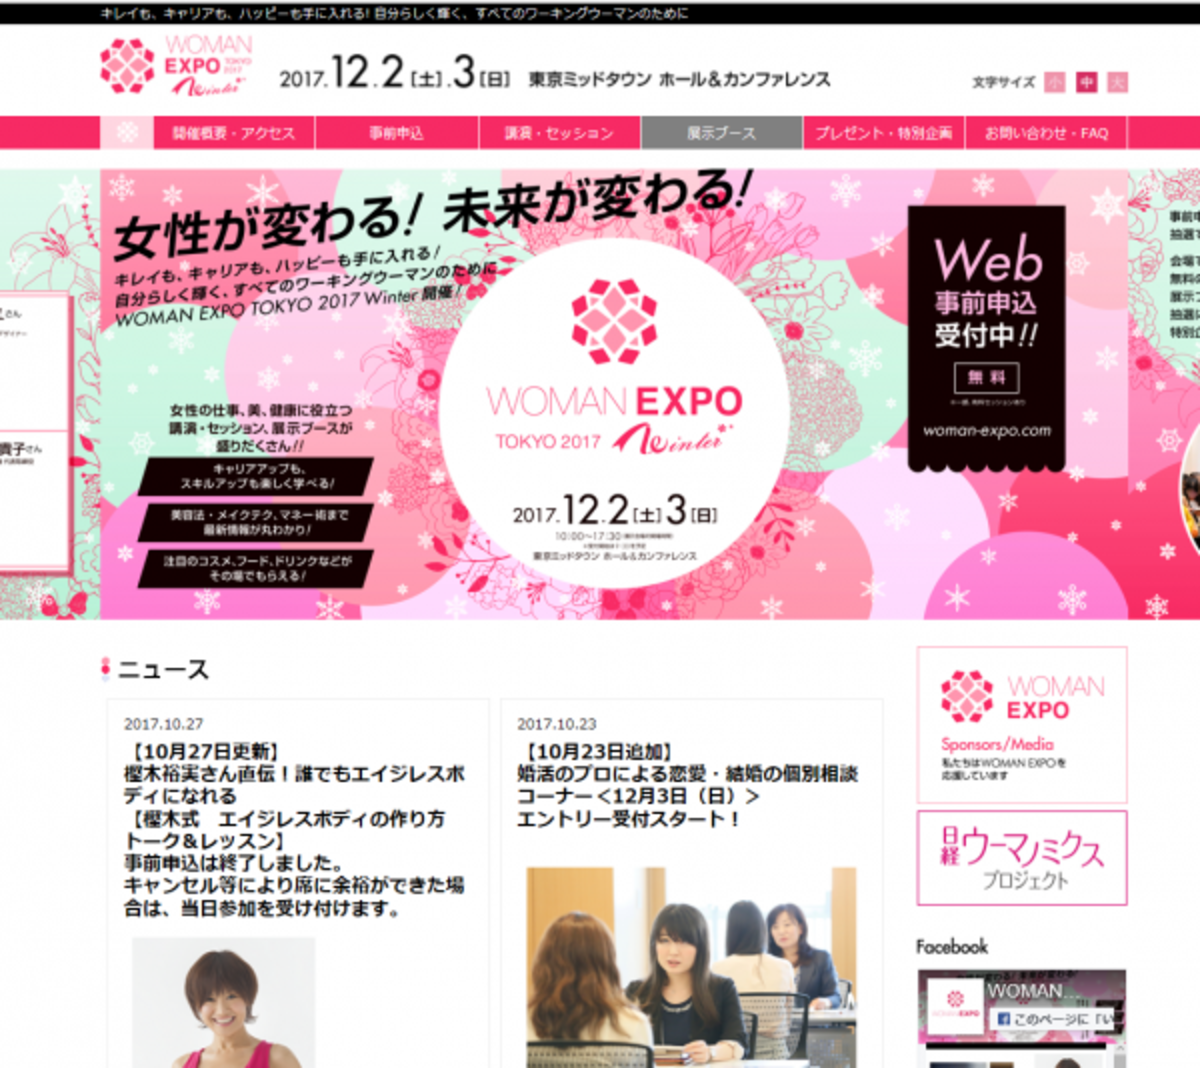 働く女性を応援 スペシャルゲストが登場する Woman Expo Tokyo 17 Winter ウーマンエキサイト 1 2